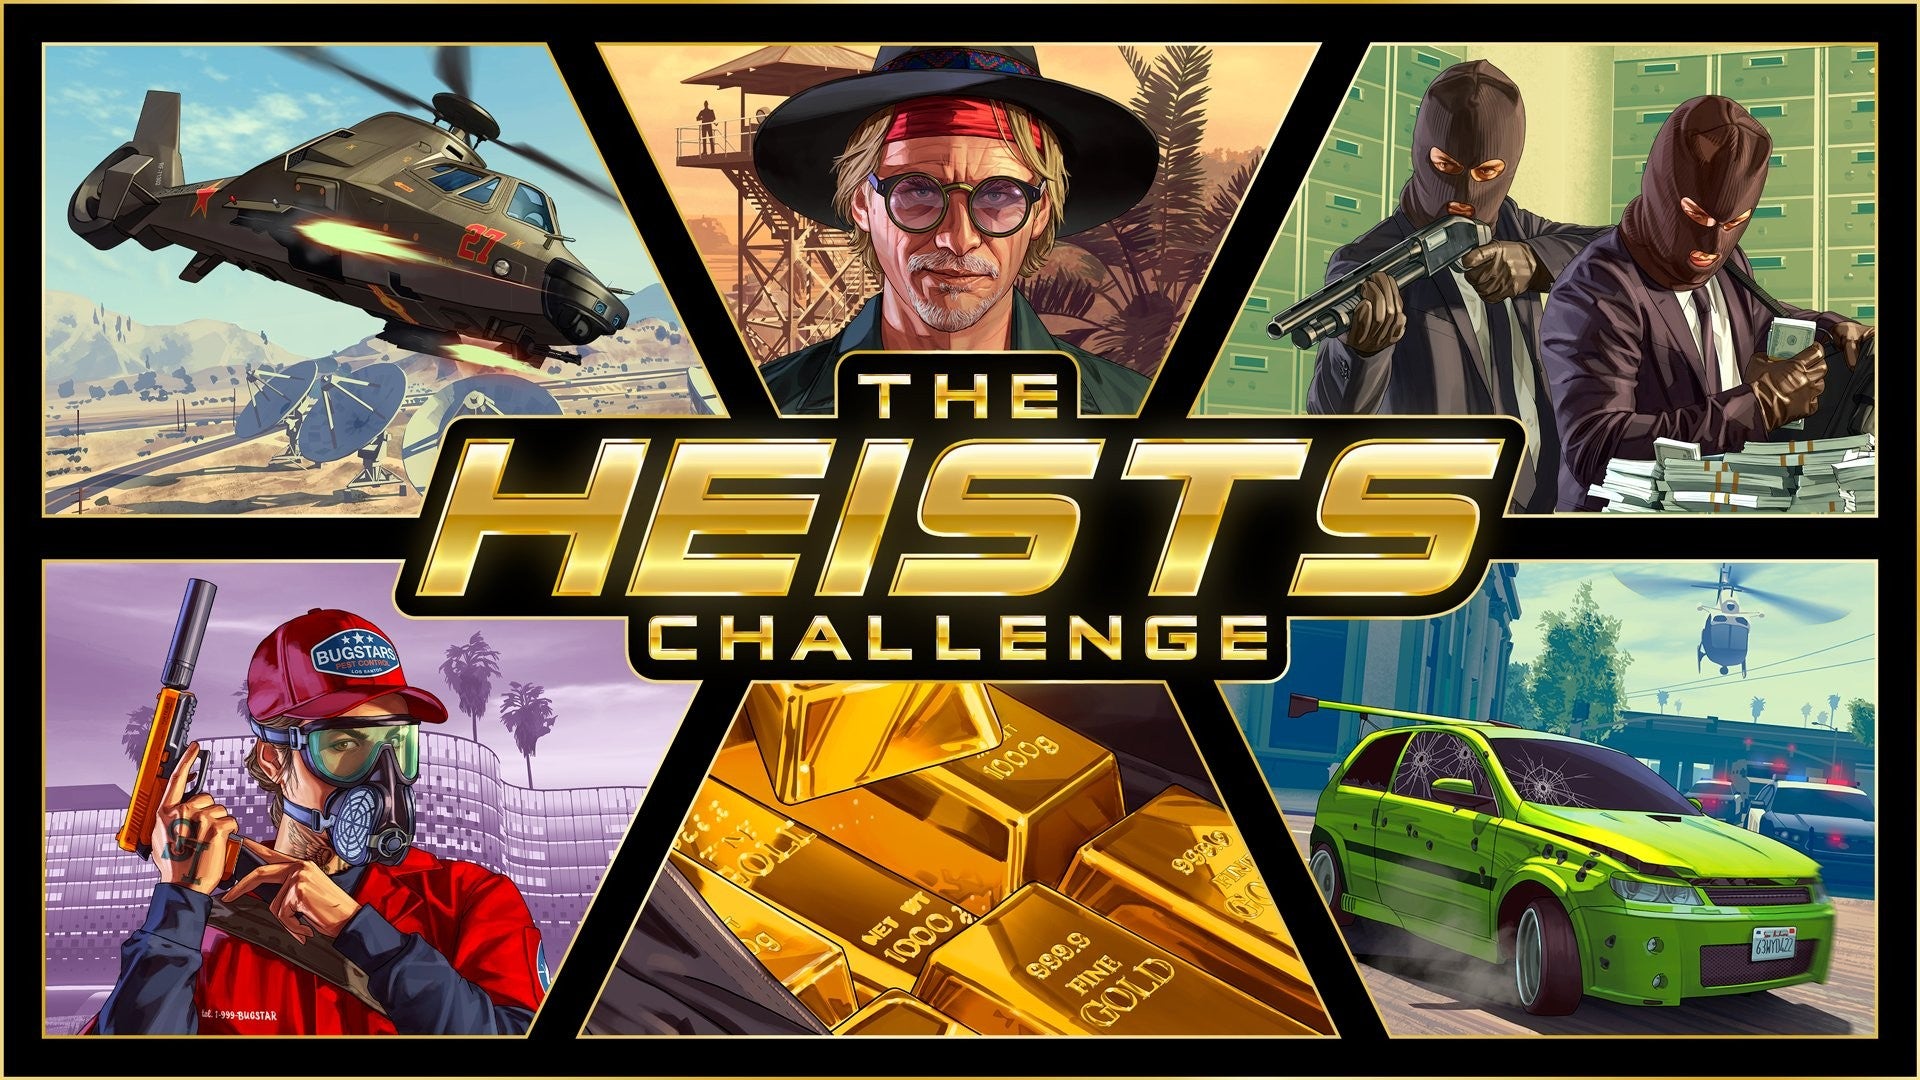 Evento GTA 5 Heists termina com desafio de US$ 2 trilhões